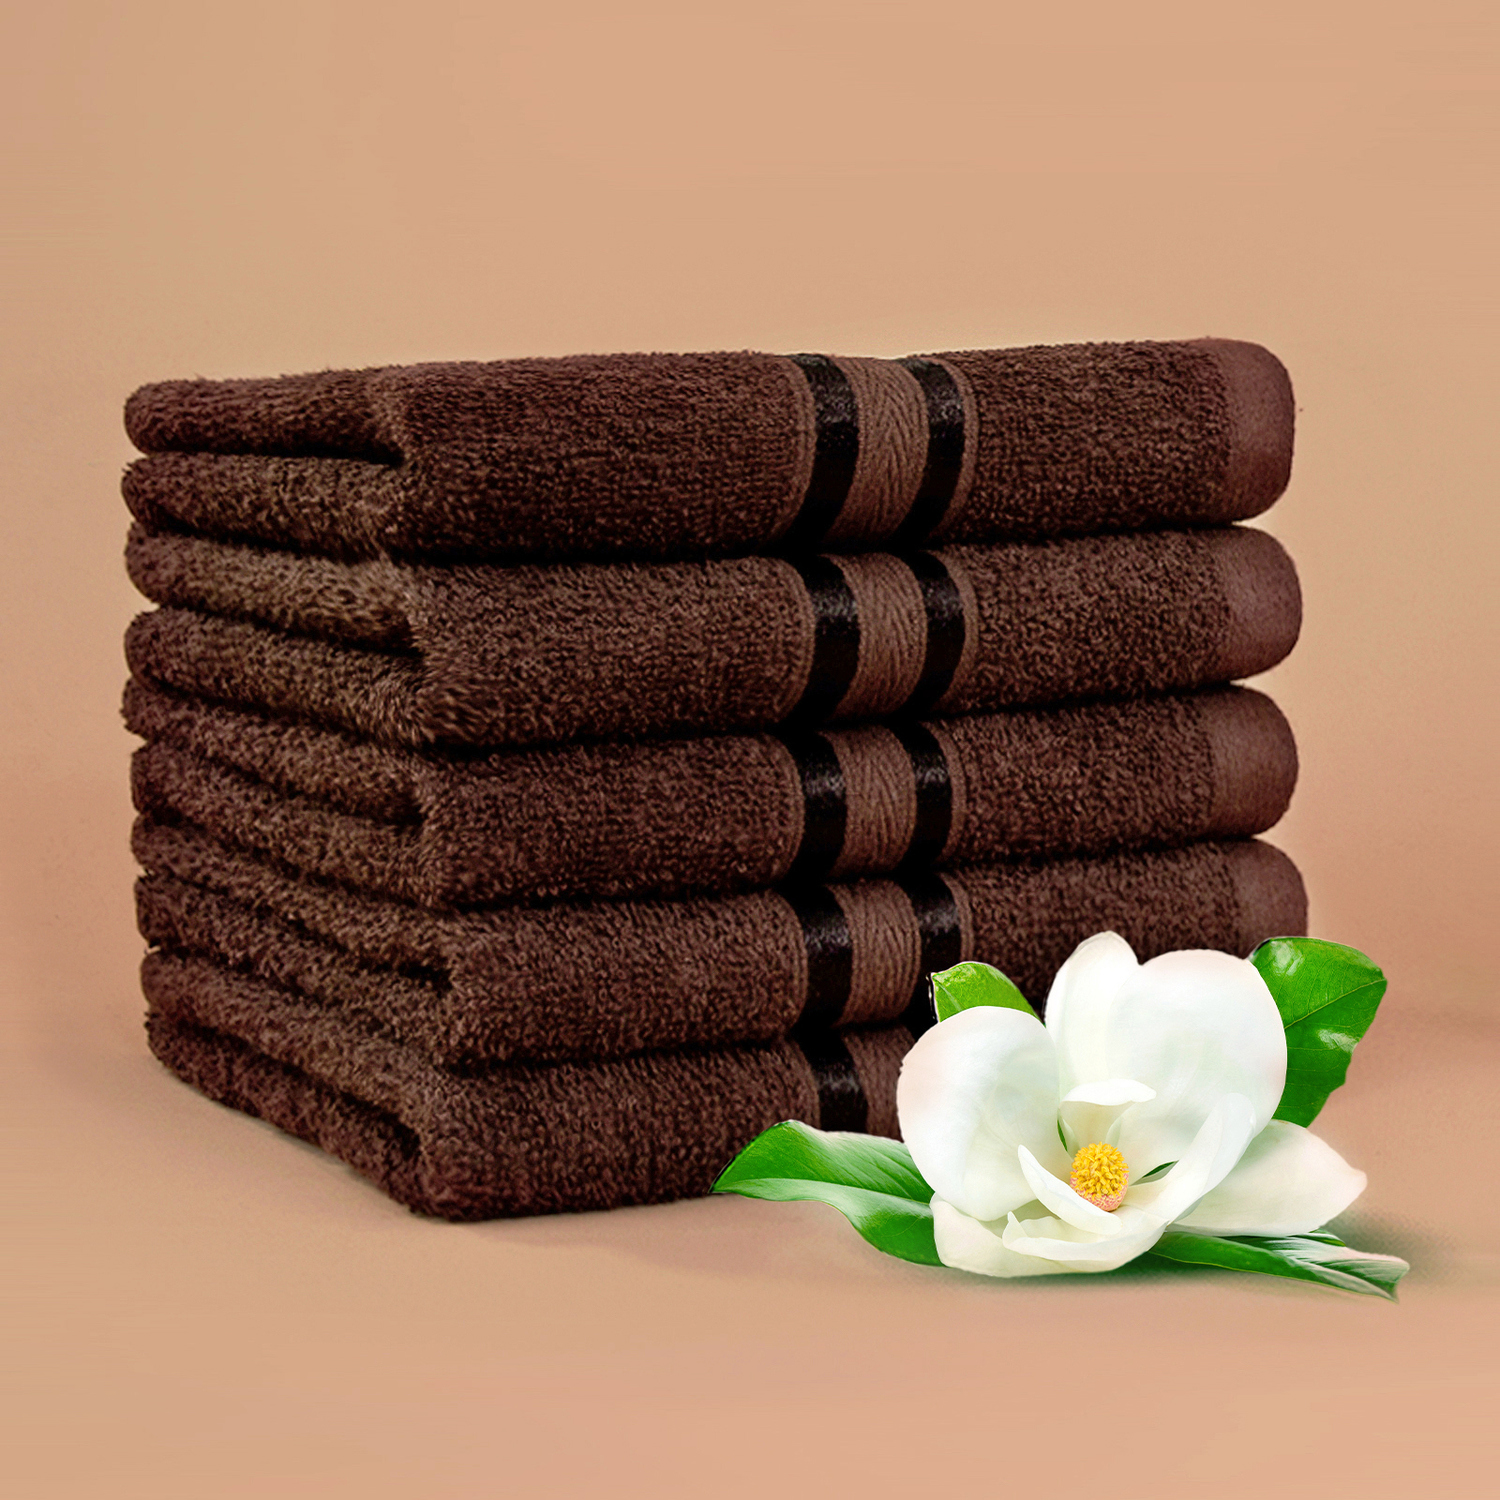 Коричневое полотенце. Стопка коричневых полотенец. Набор полотенец коричневого цвета. Полотенце (светло-коричневый).